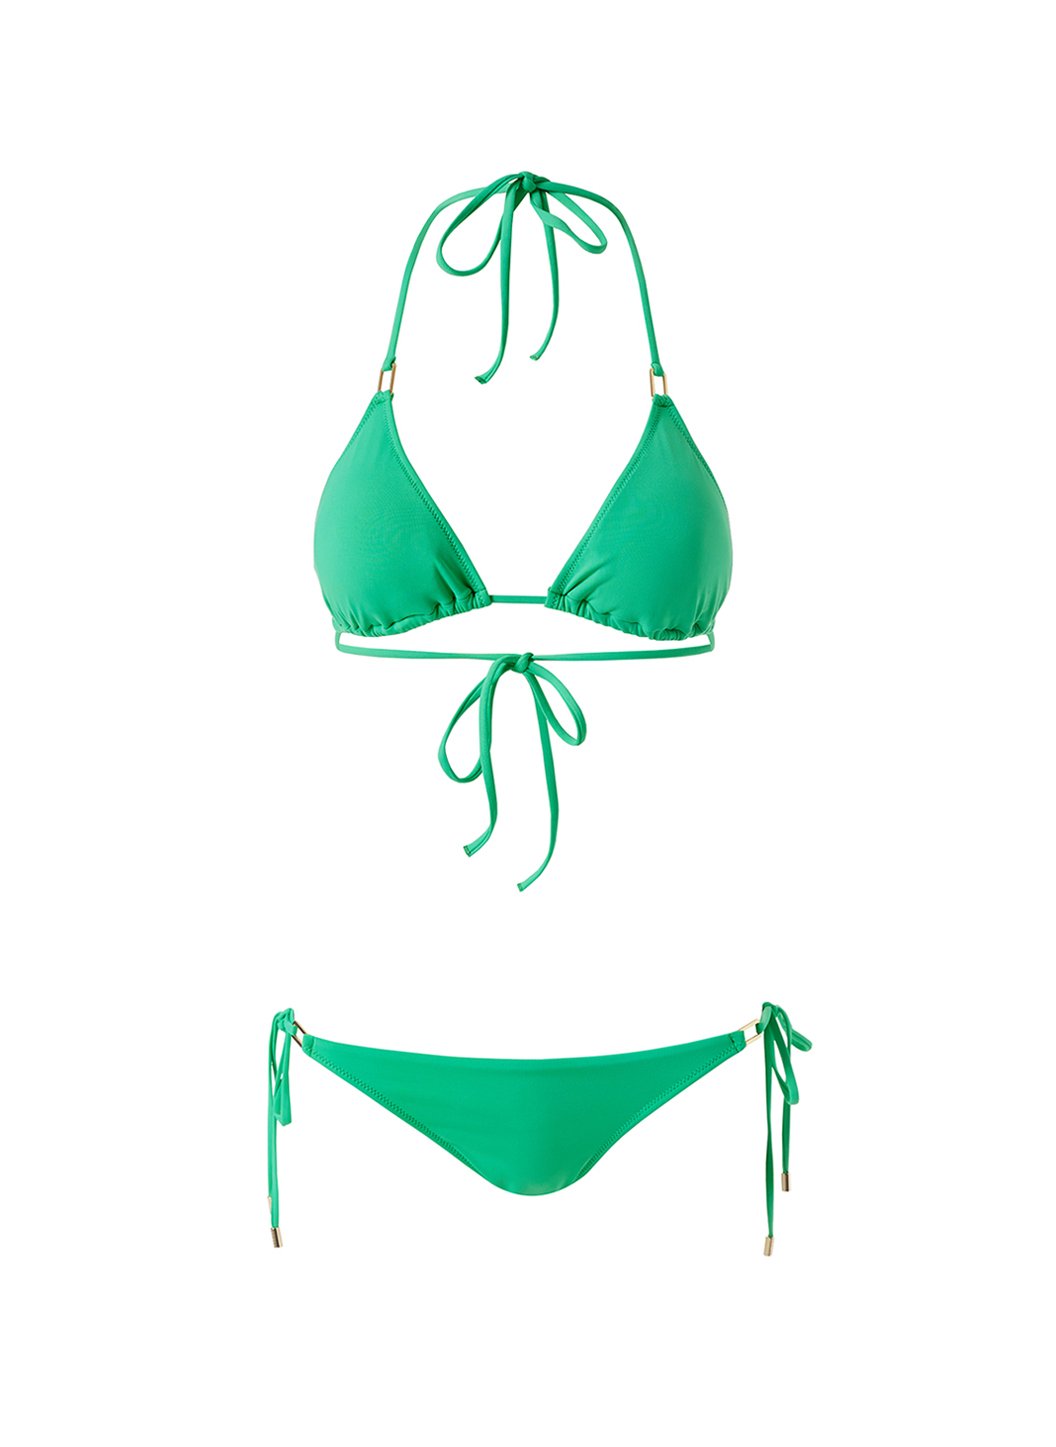 cancun-green-classic-triangle-bikini